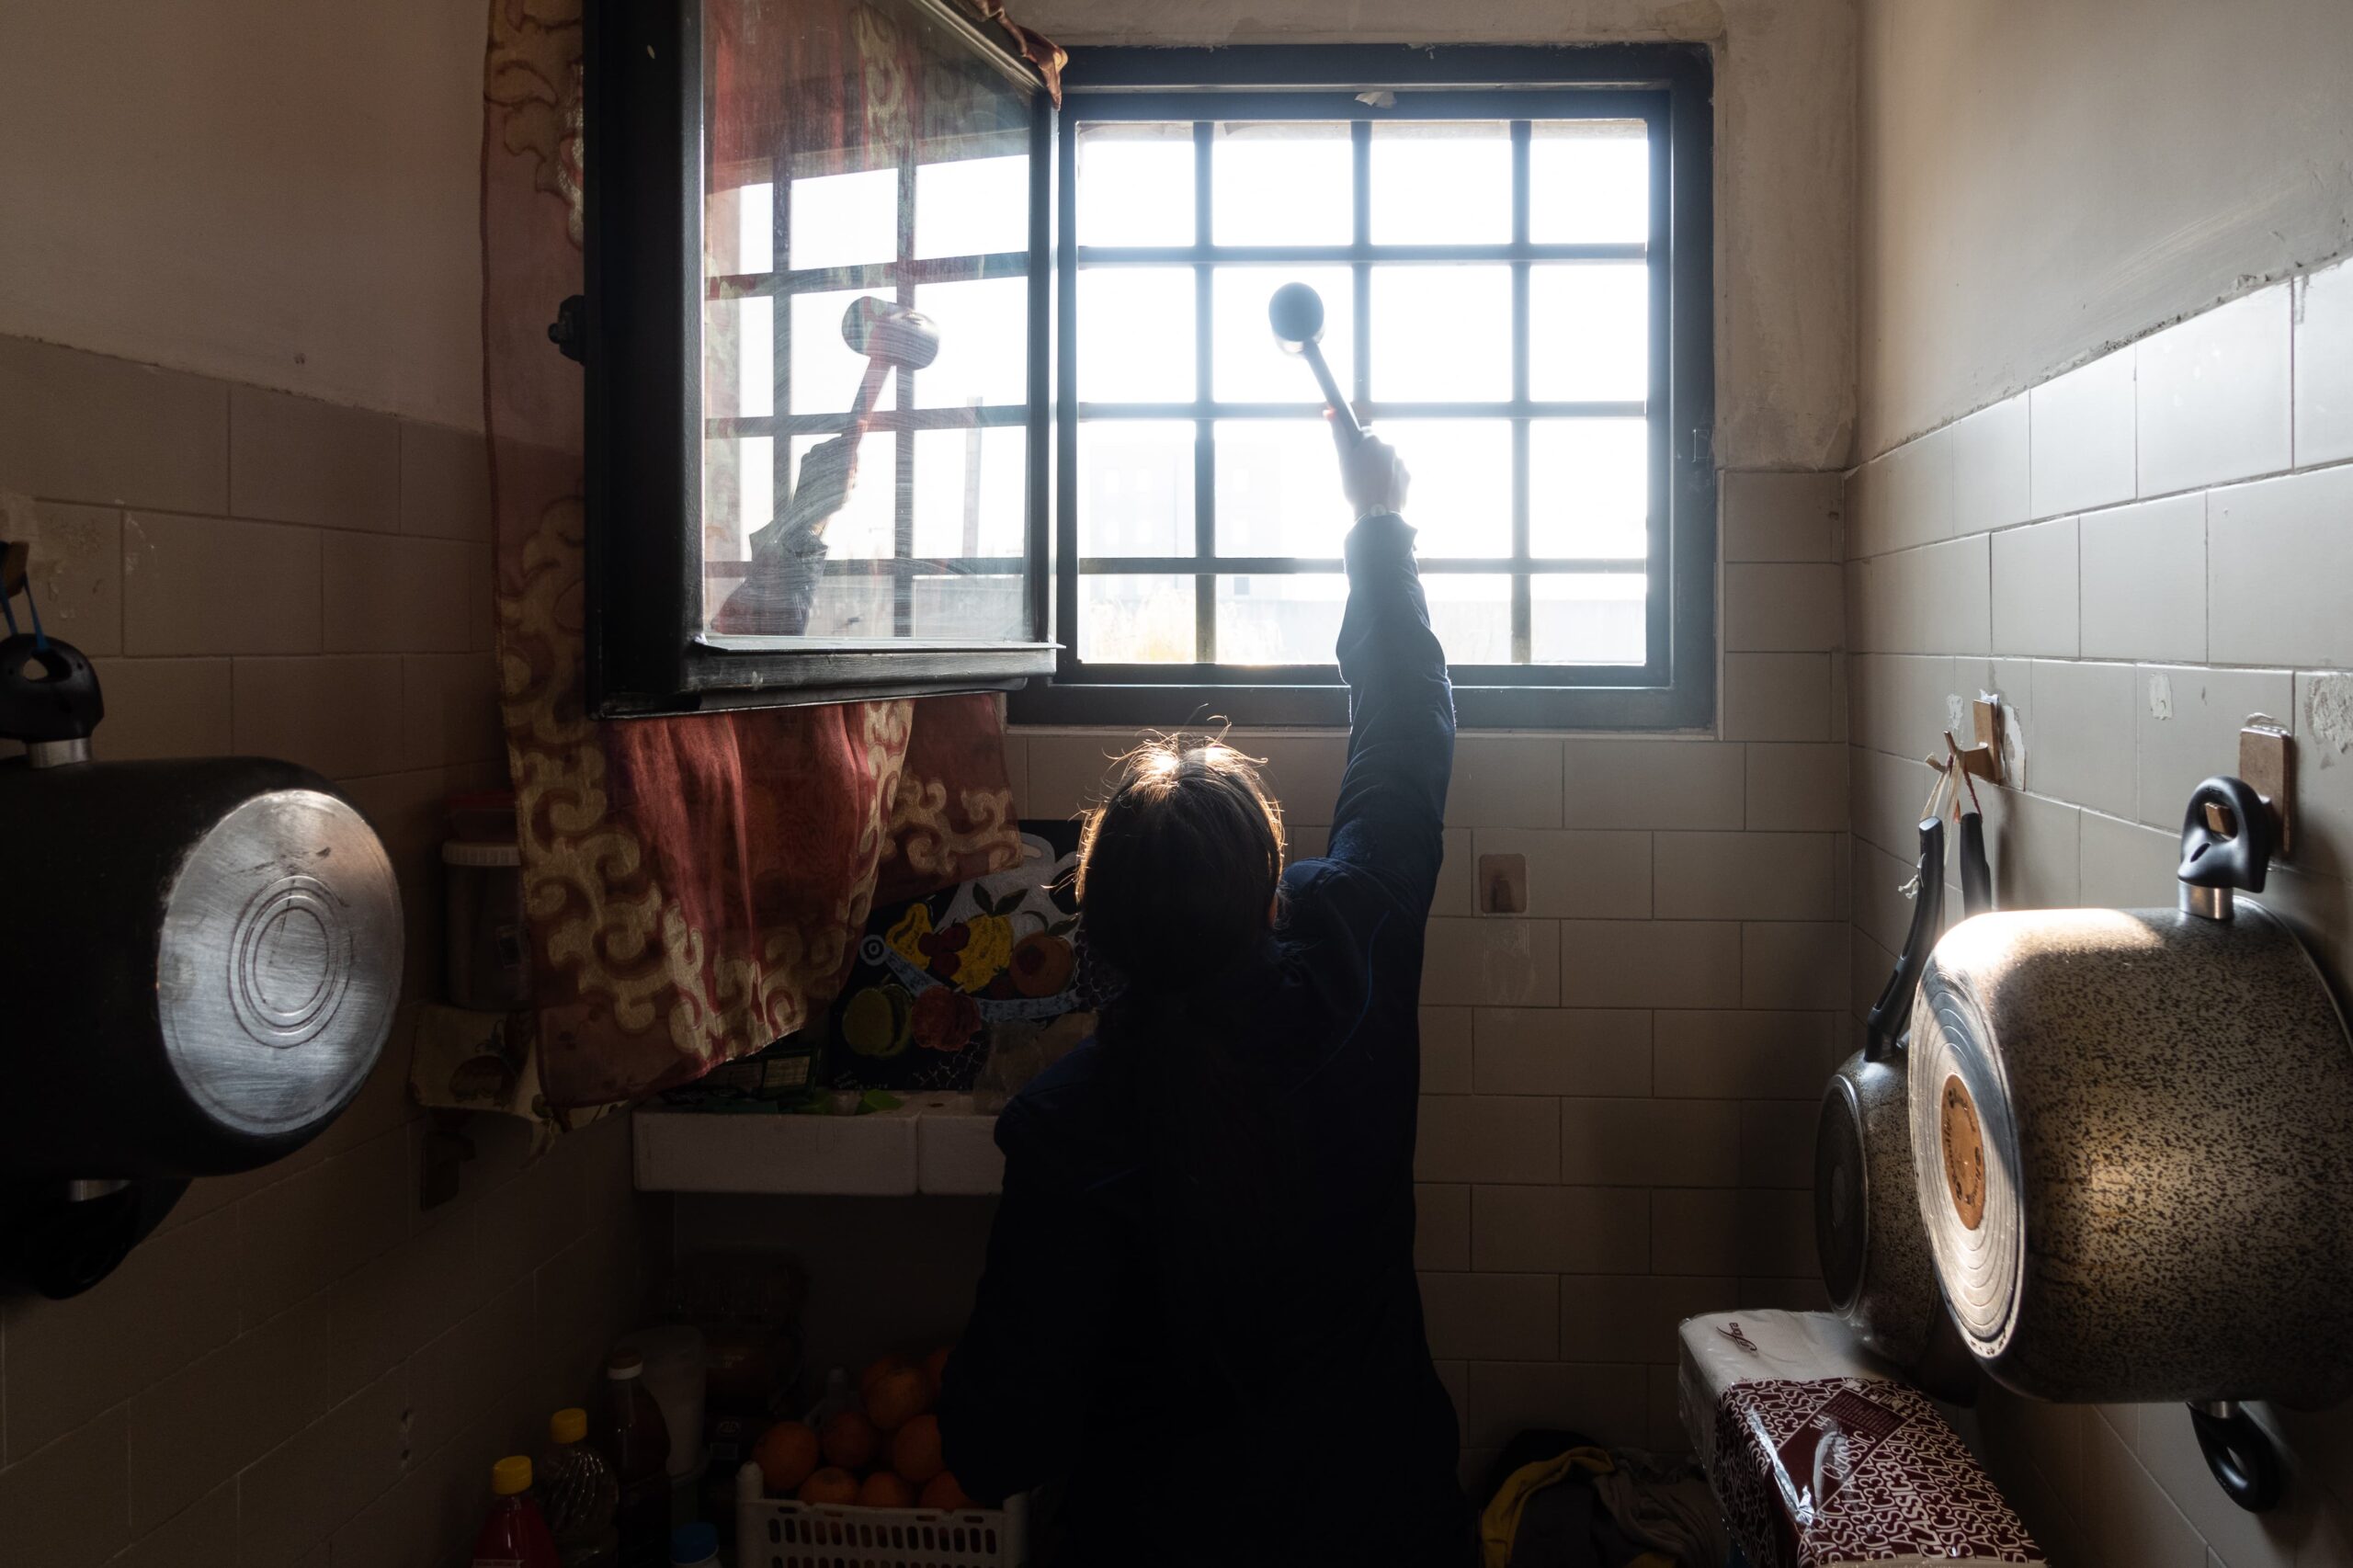 una donna dietro una finestra con le sbarre ha le braccia alzate e tiene in mano un mestolo